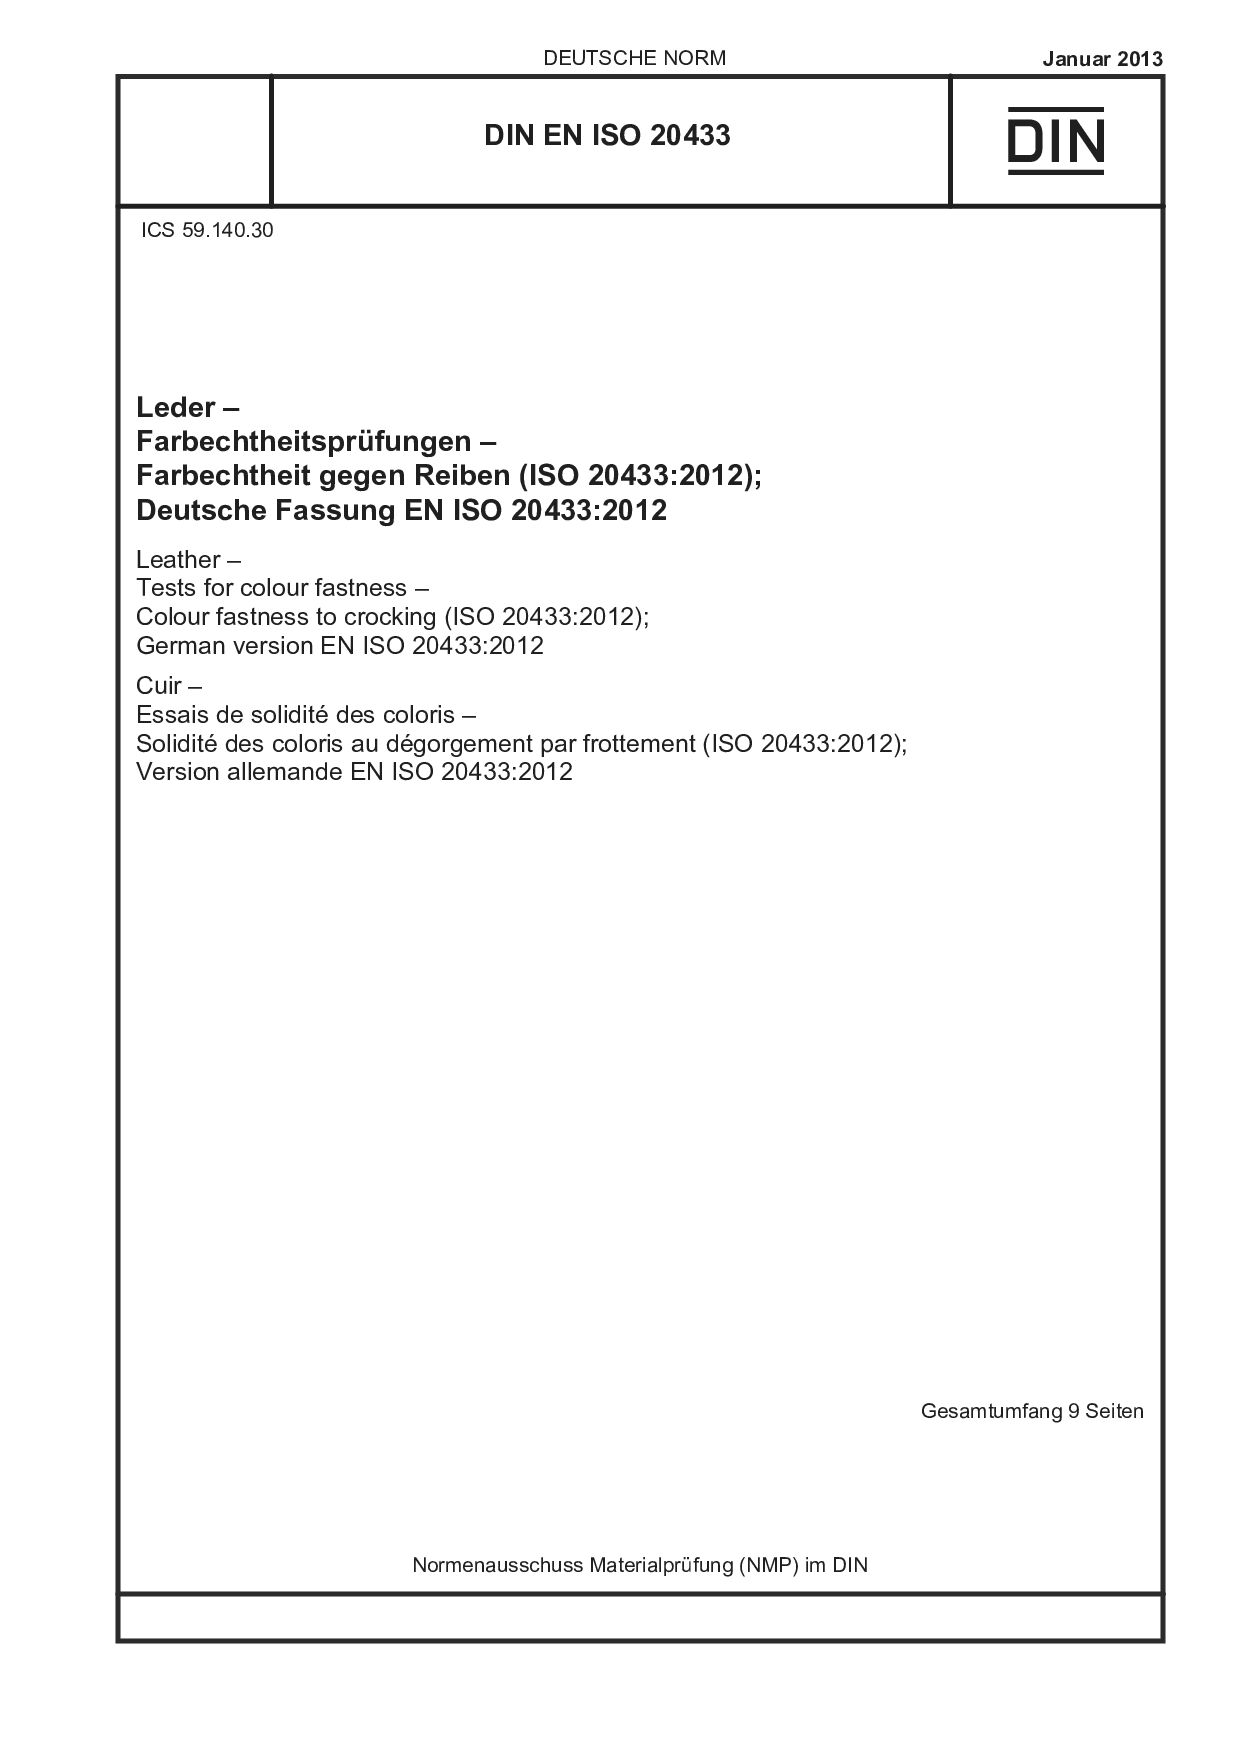 DIN EN ISO 20433:2013-01封面图